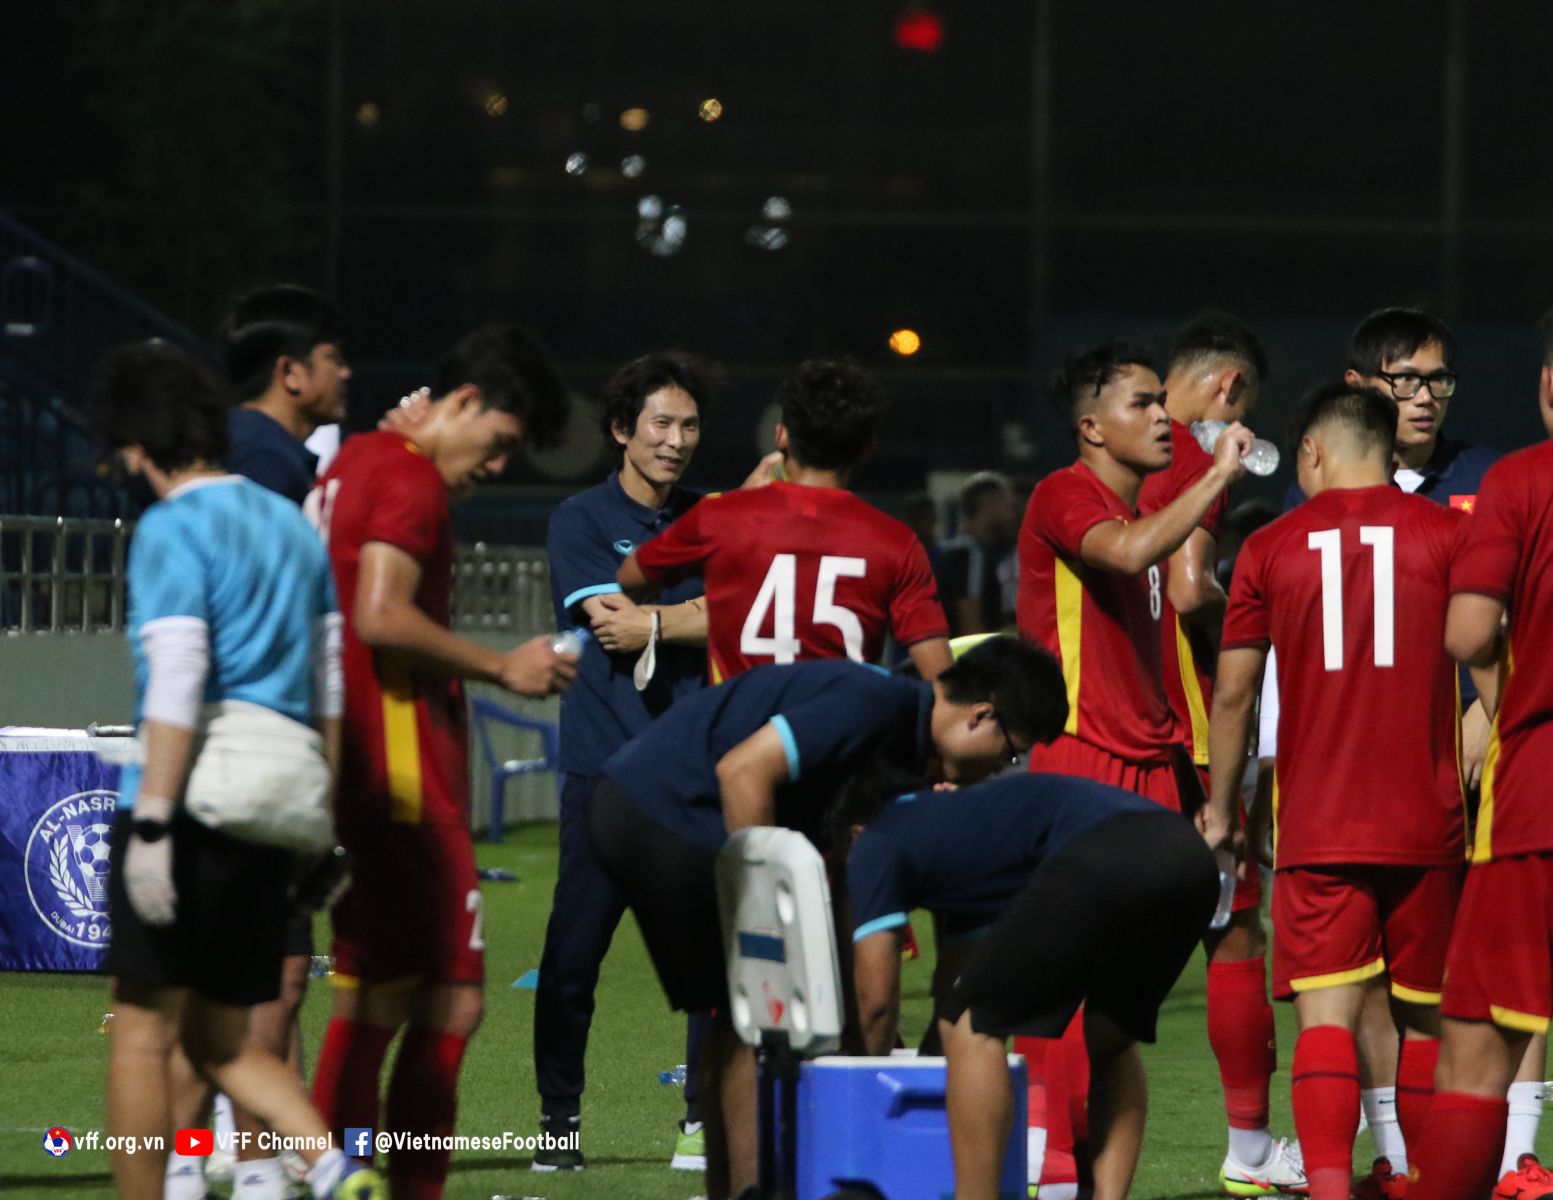 HLV Gong Oh-kyun được các cầu thủ U23 nhận xét thoải mái trong cách huấn luyện. 